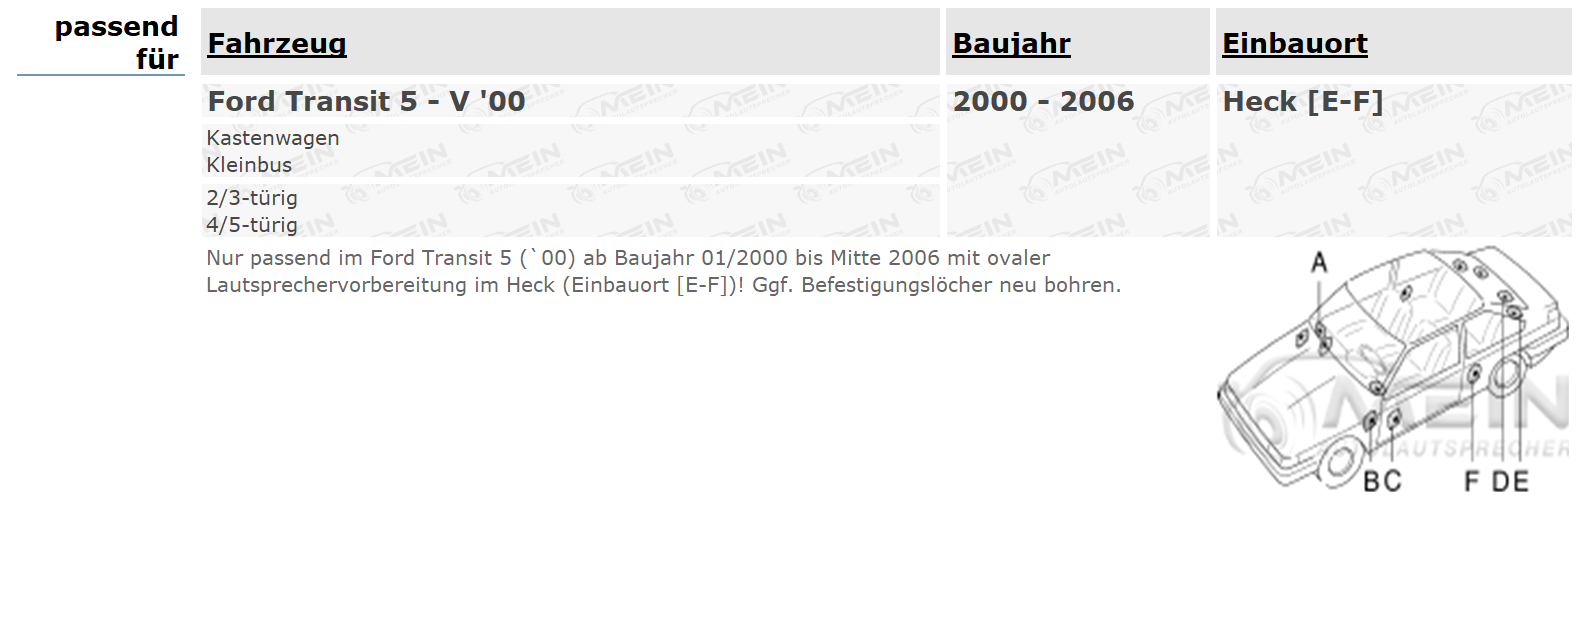 ALPINE LAUTSPRECHER für FORD TRANSIT 5 - V '00 2000-2006 Heck Hinten